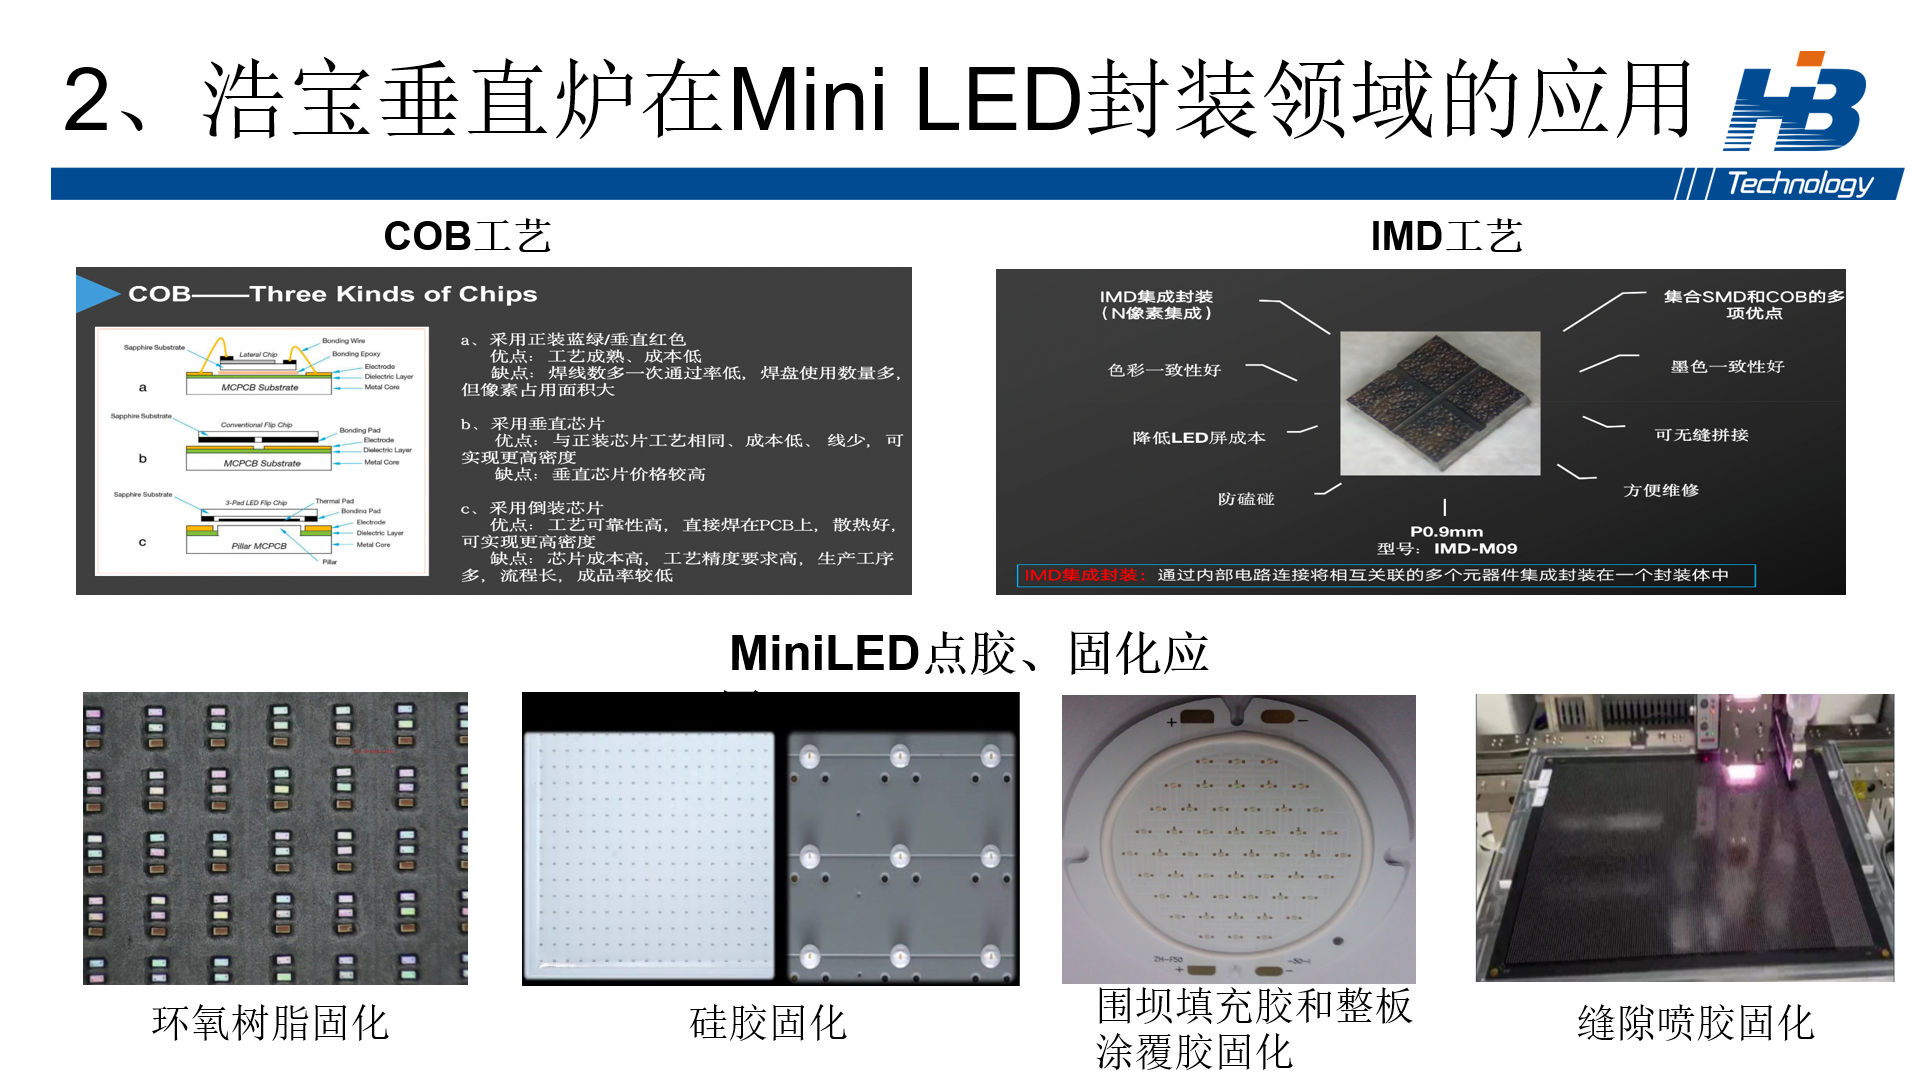 浩宝全自动HVO洁净垂直固化炉在Mini LED封装工艺中的应用